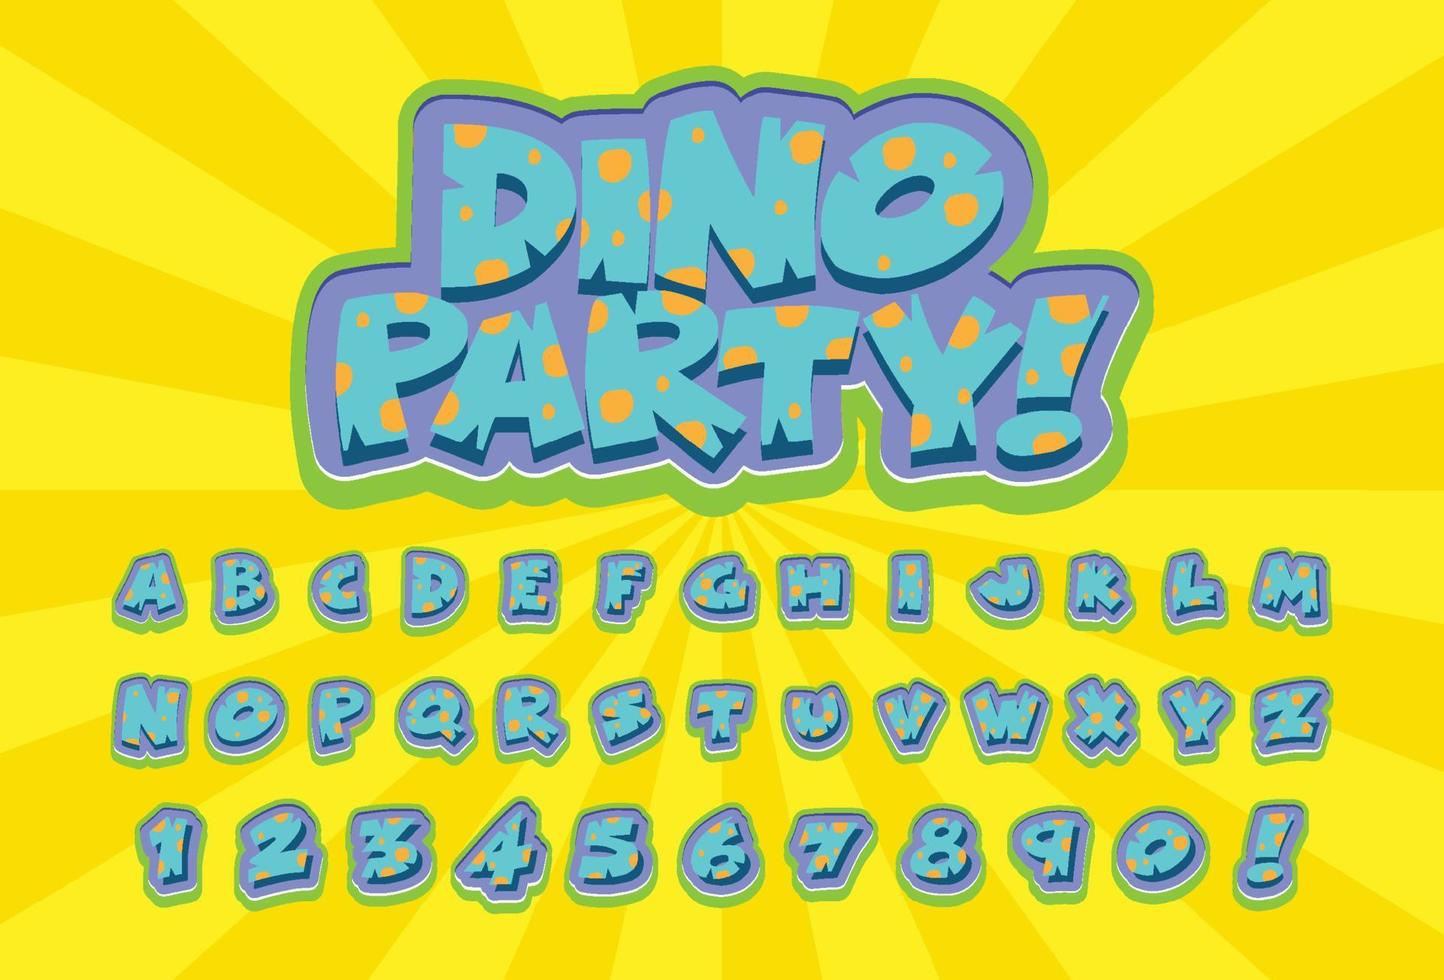 teckensnittsdesign för engelska alfabet i dinosauriekaraktär på färgmall vektor